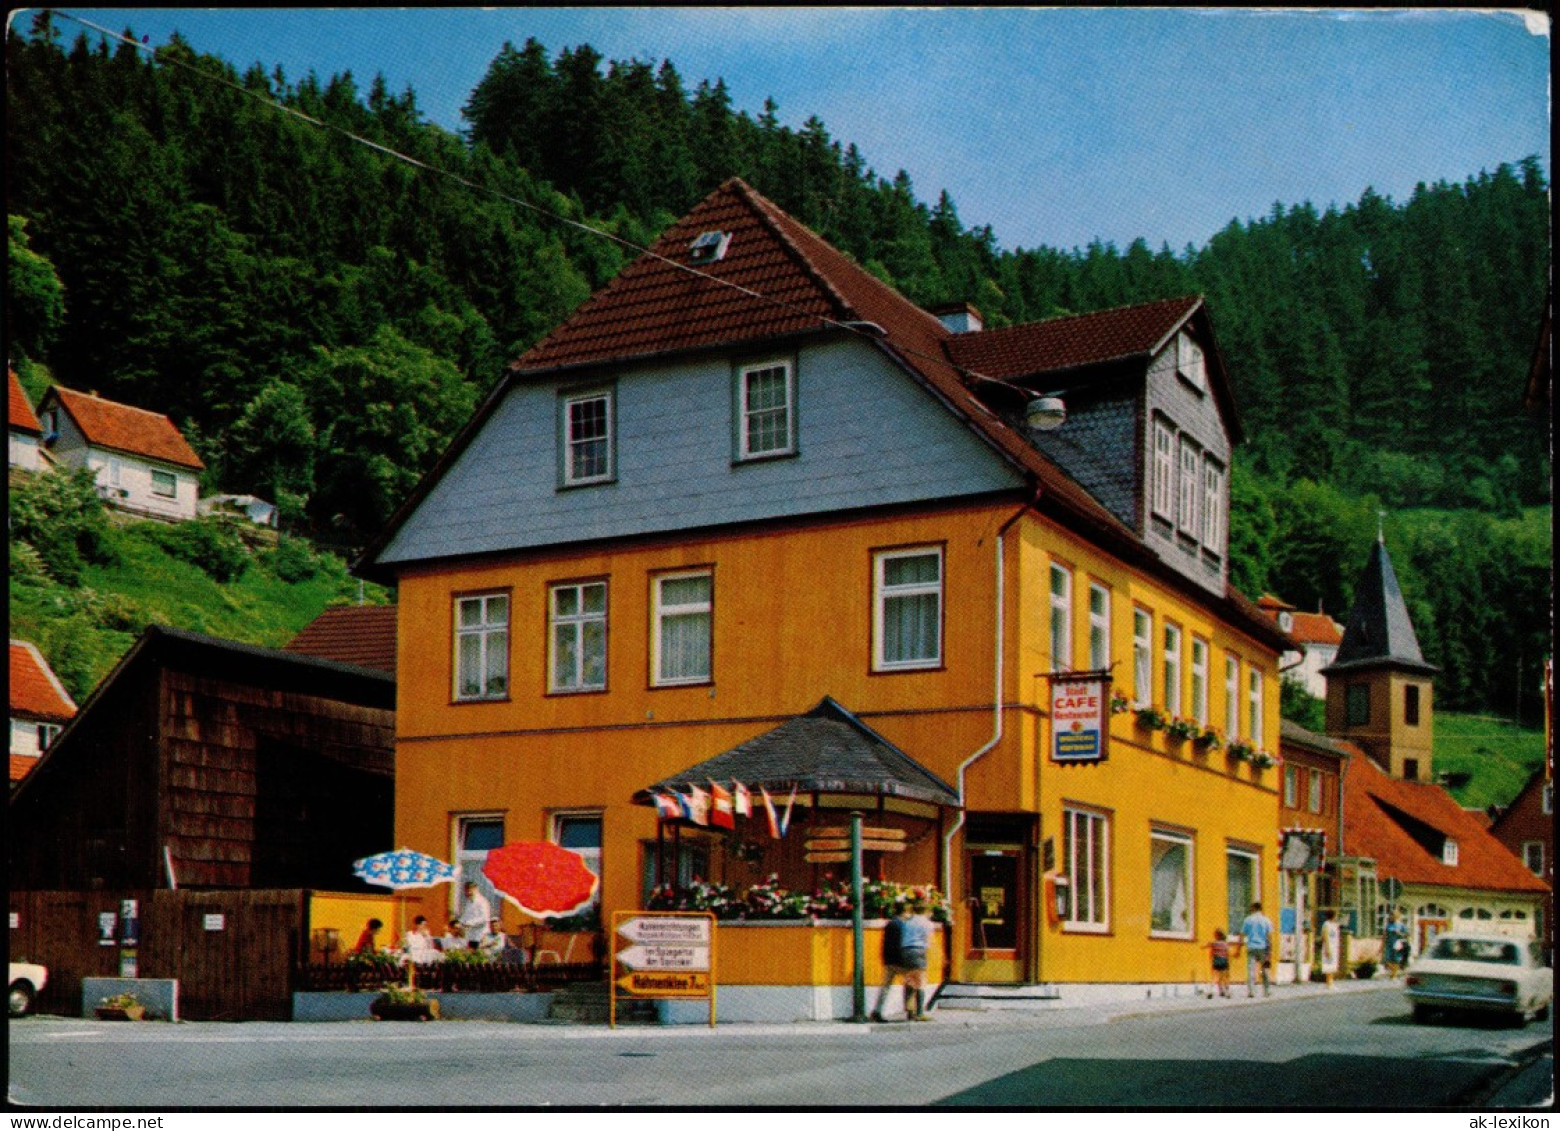 Wildemann (Innerstetal) Restaurant Stadt-Café Bes. Else  Oberharz 1970 - Wildemann